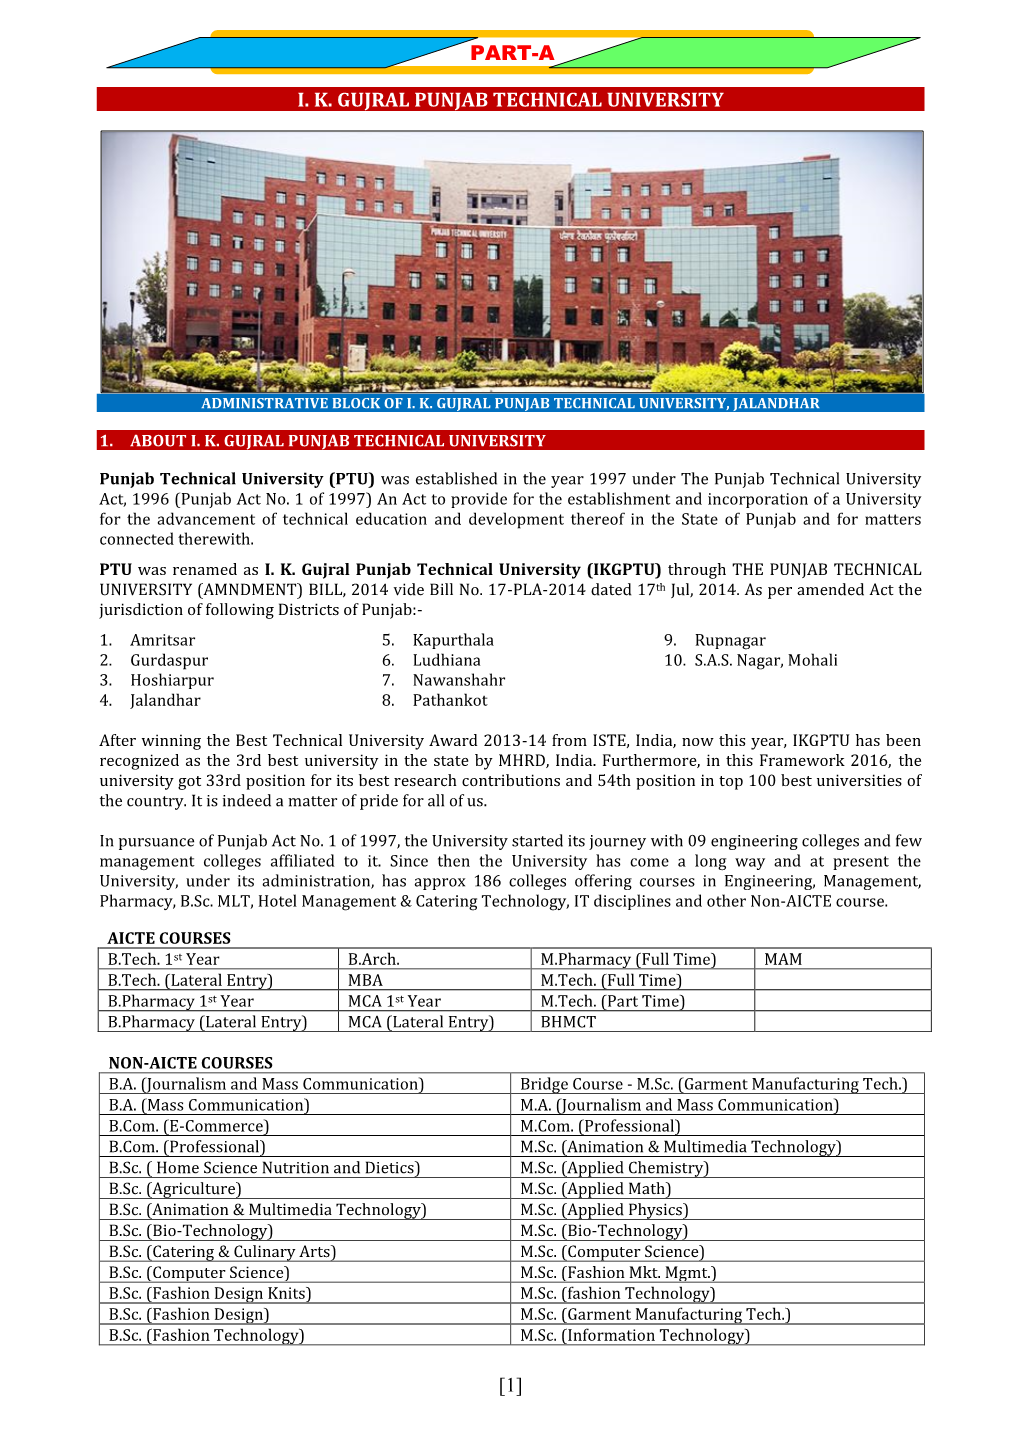 Ik Gujral Punjab Technical University Part-A